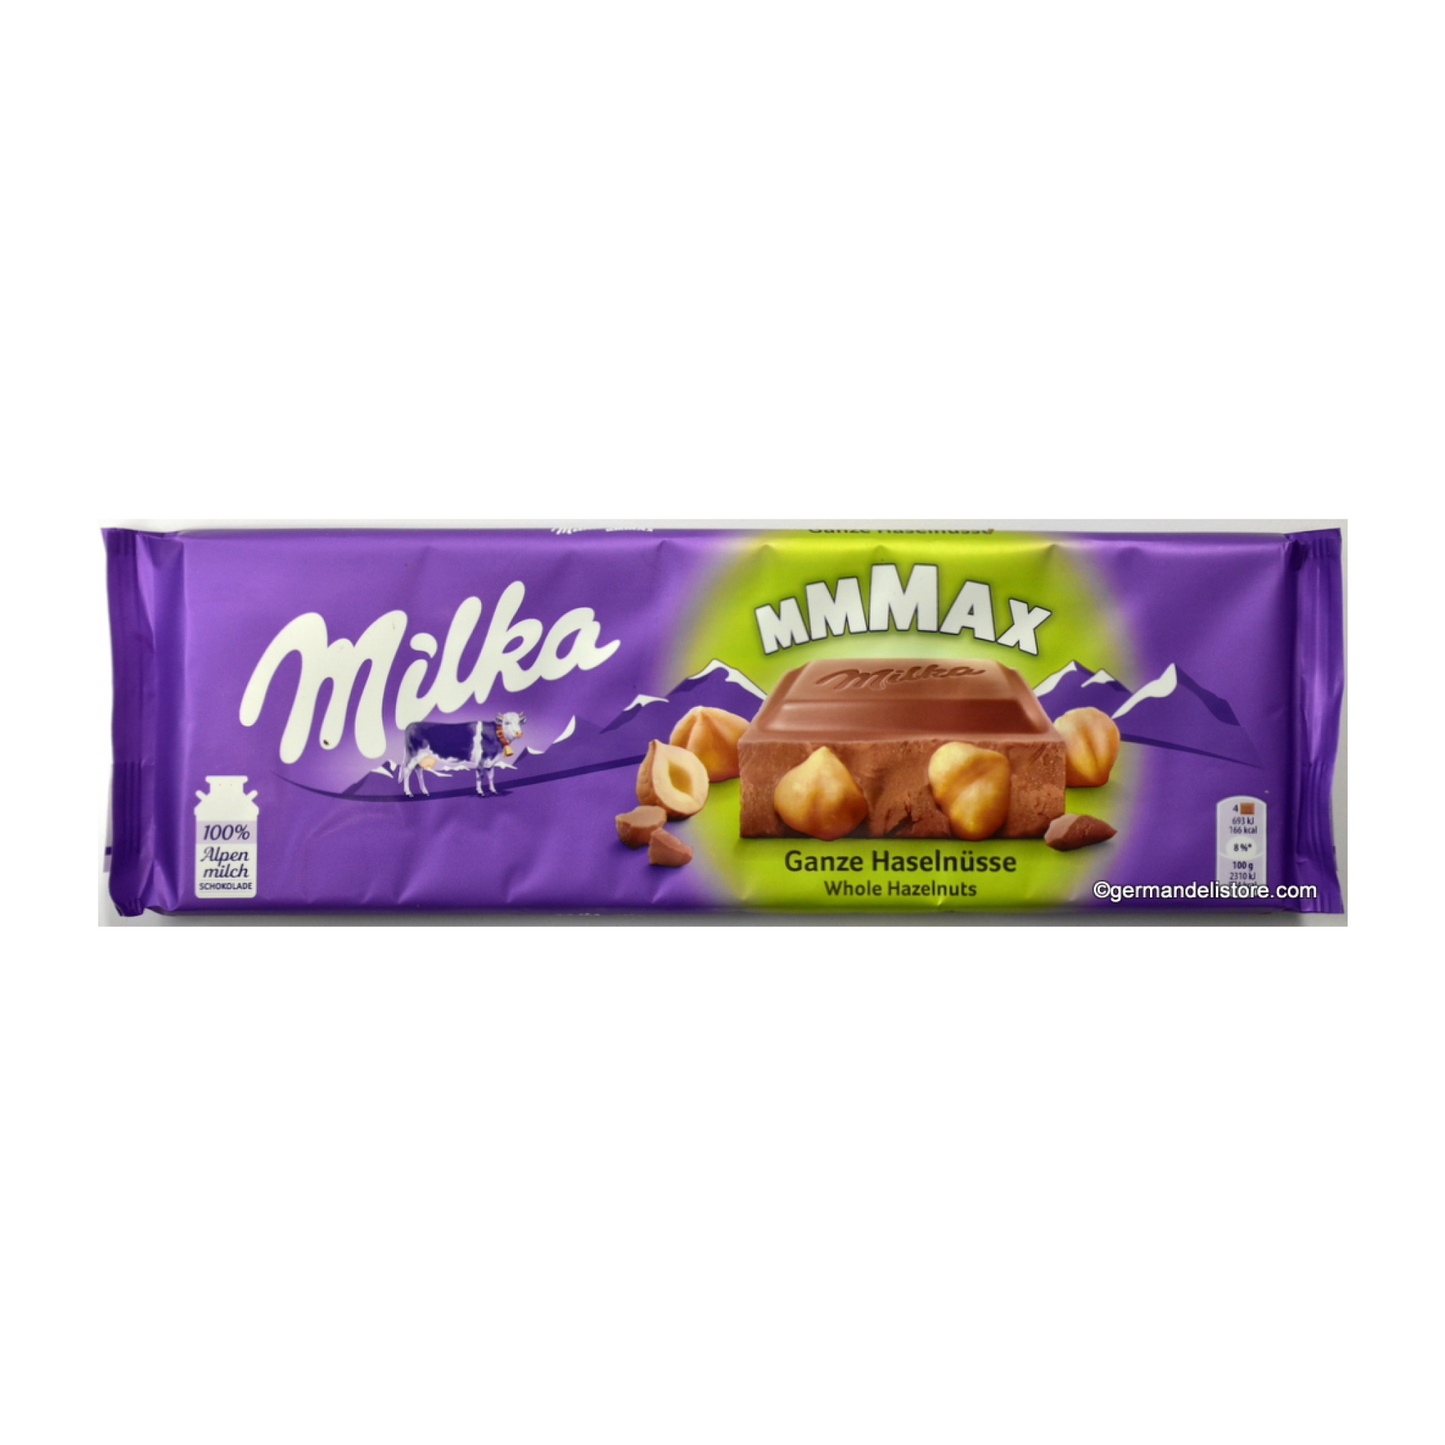 Milka Mmmax Whole Hazelnuts